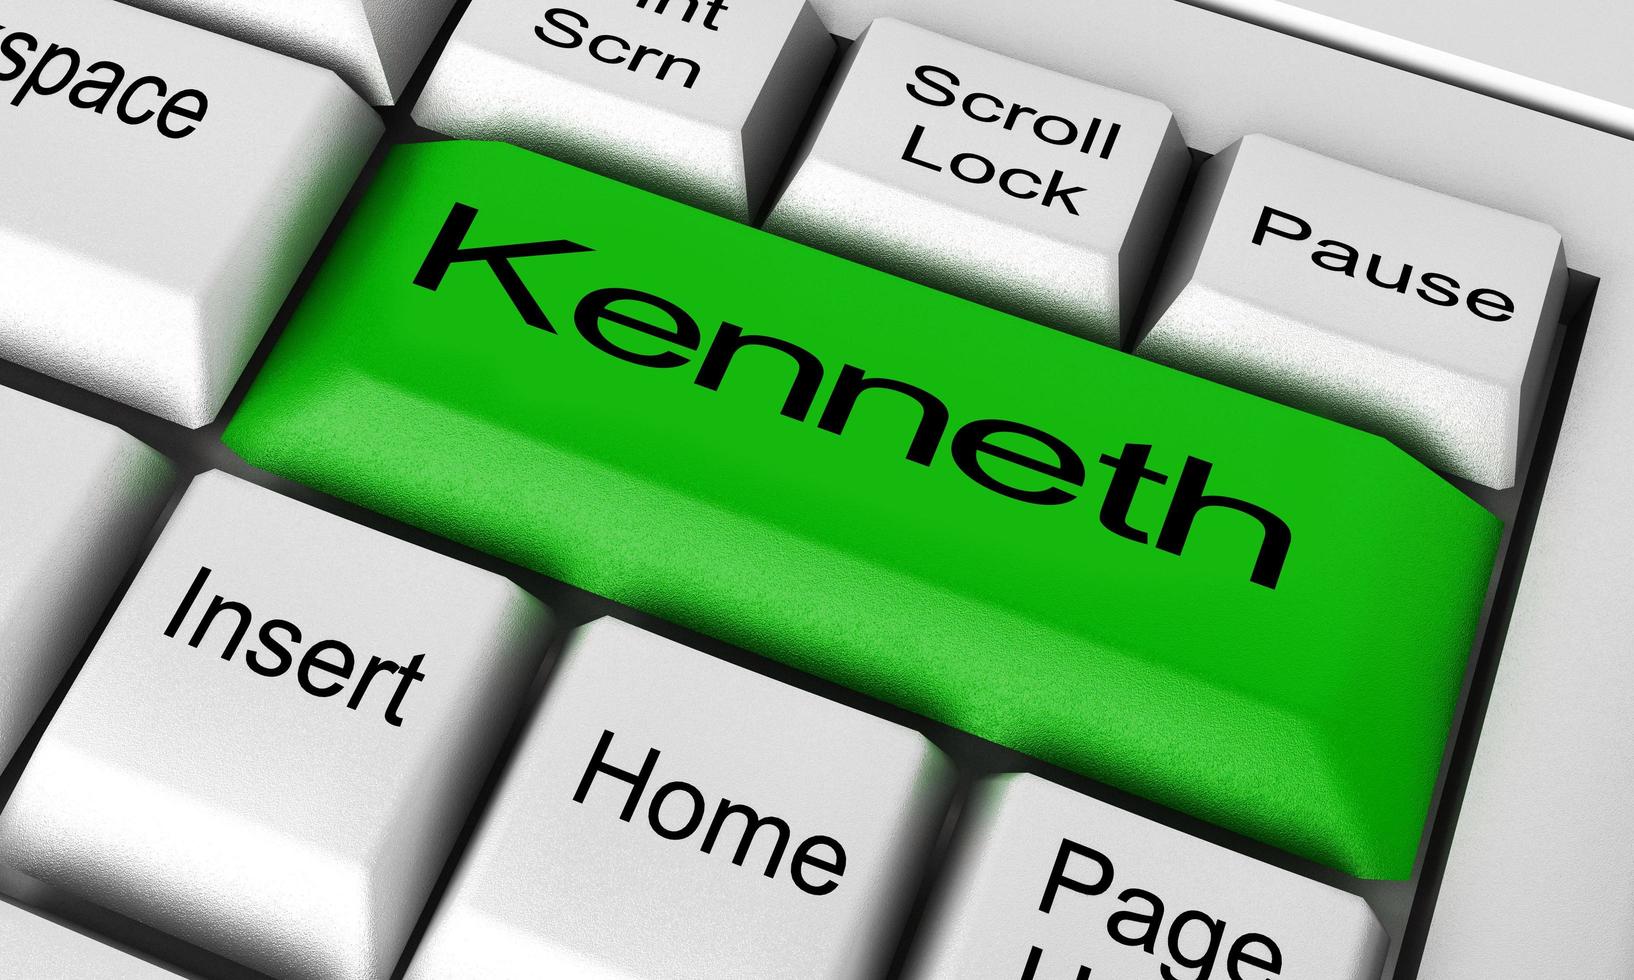 palabra de kenneth en el botón del teclado foto